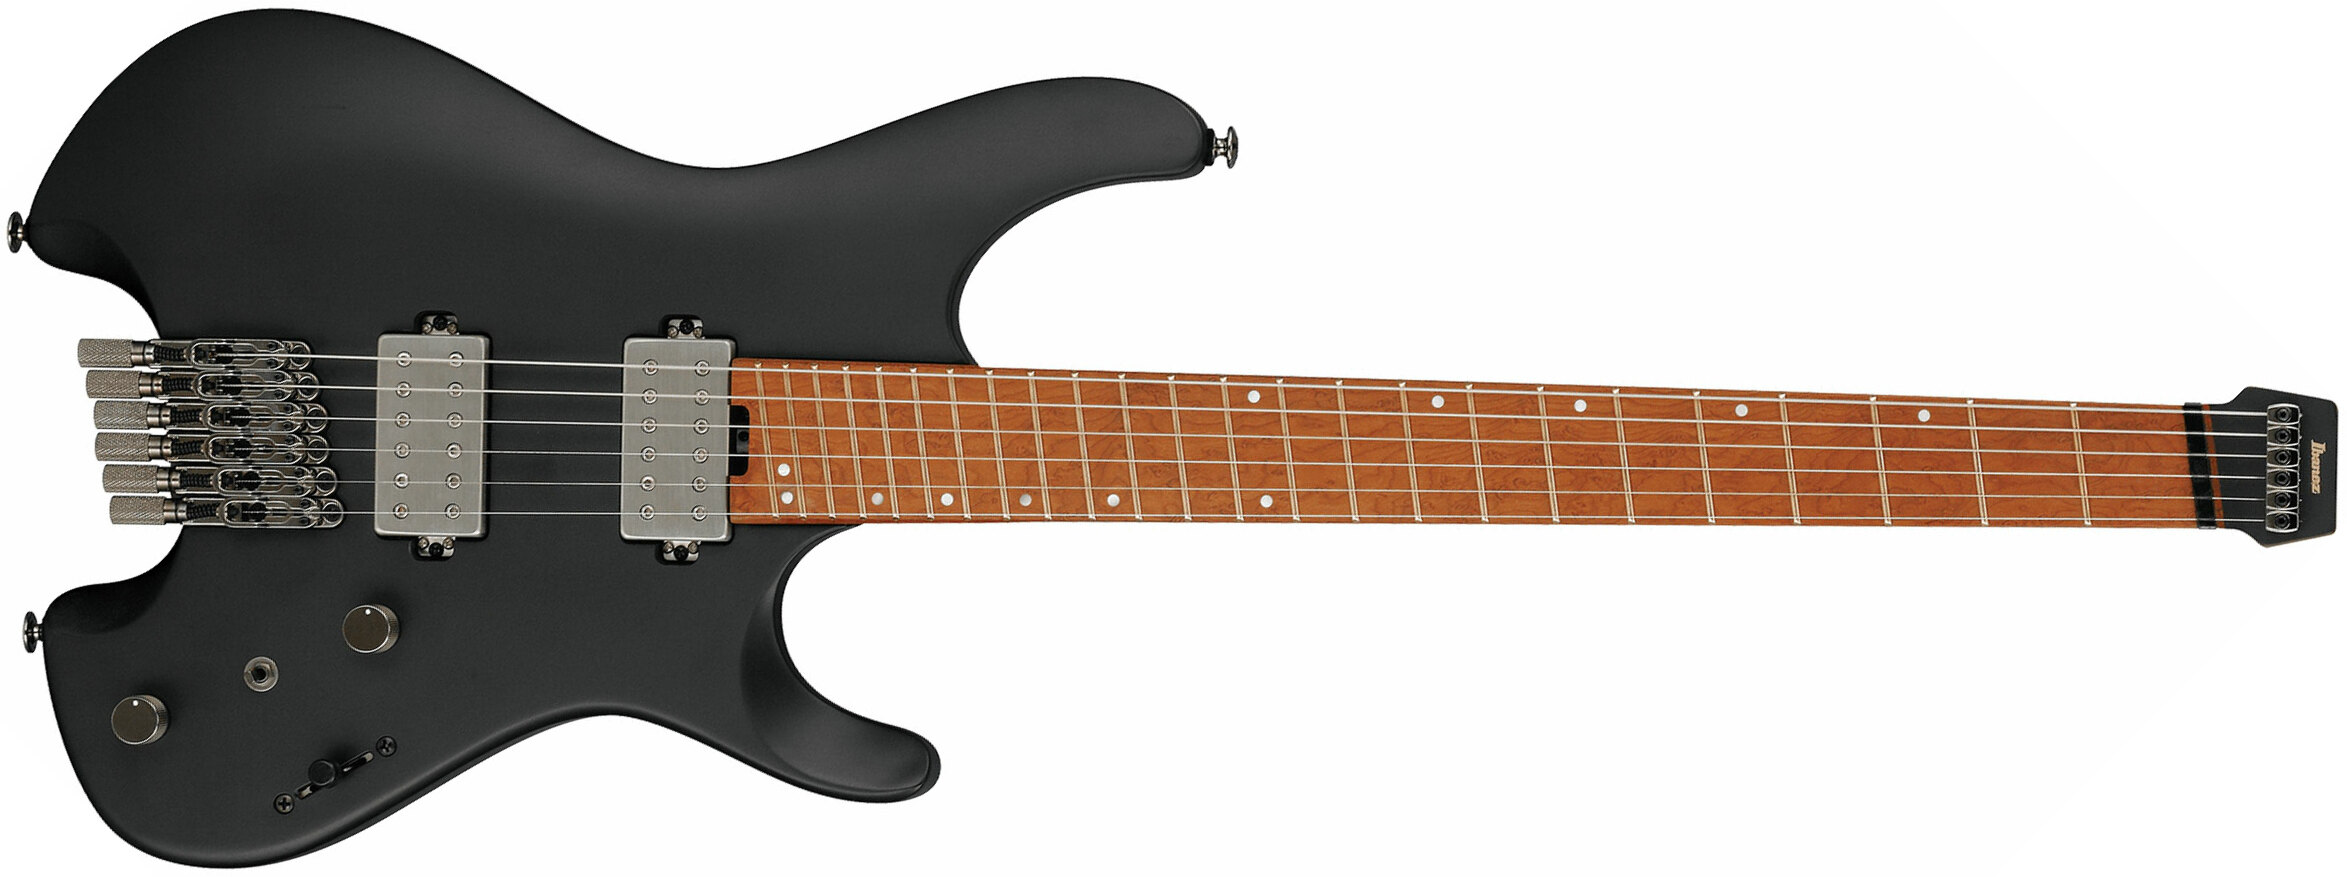 Ibanez Qx52 Bkf Quest Hh Ht Mn - Black Flat - Metalen elektrische gitaar - Main picture